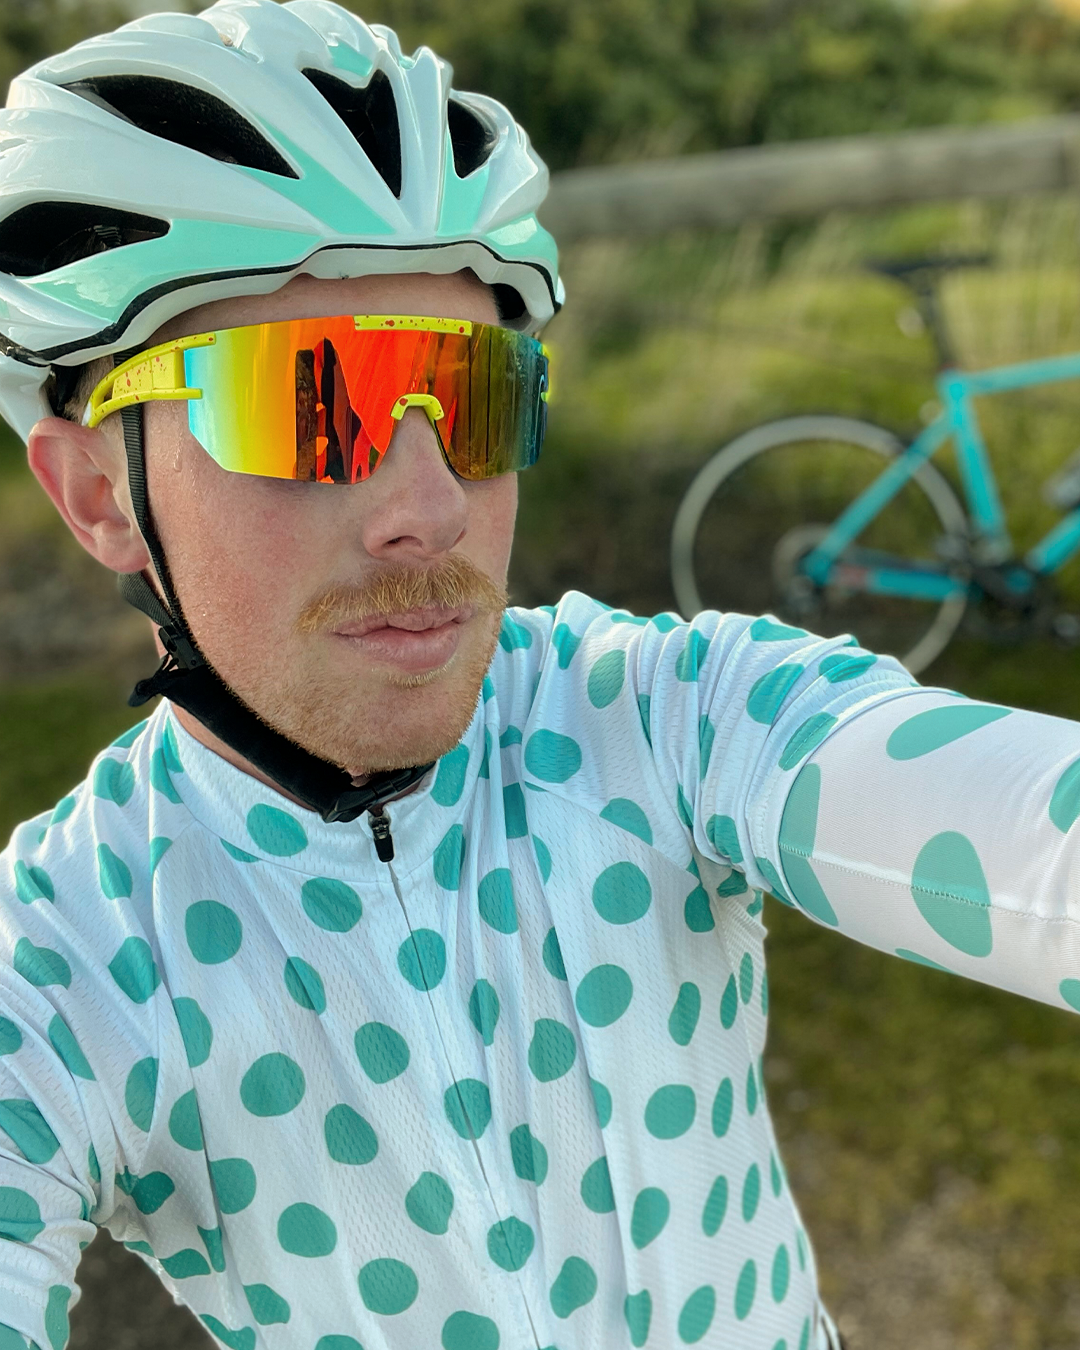 Men's White Polka Dot Short Sleeve Cycling Kit